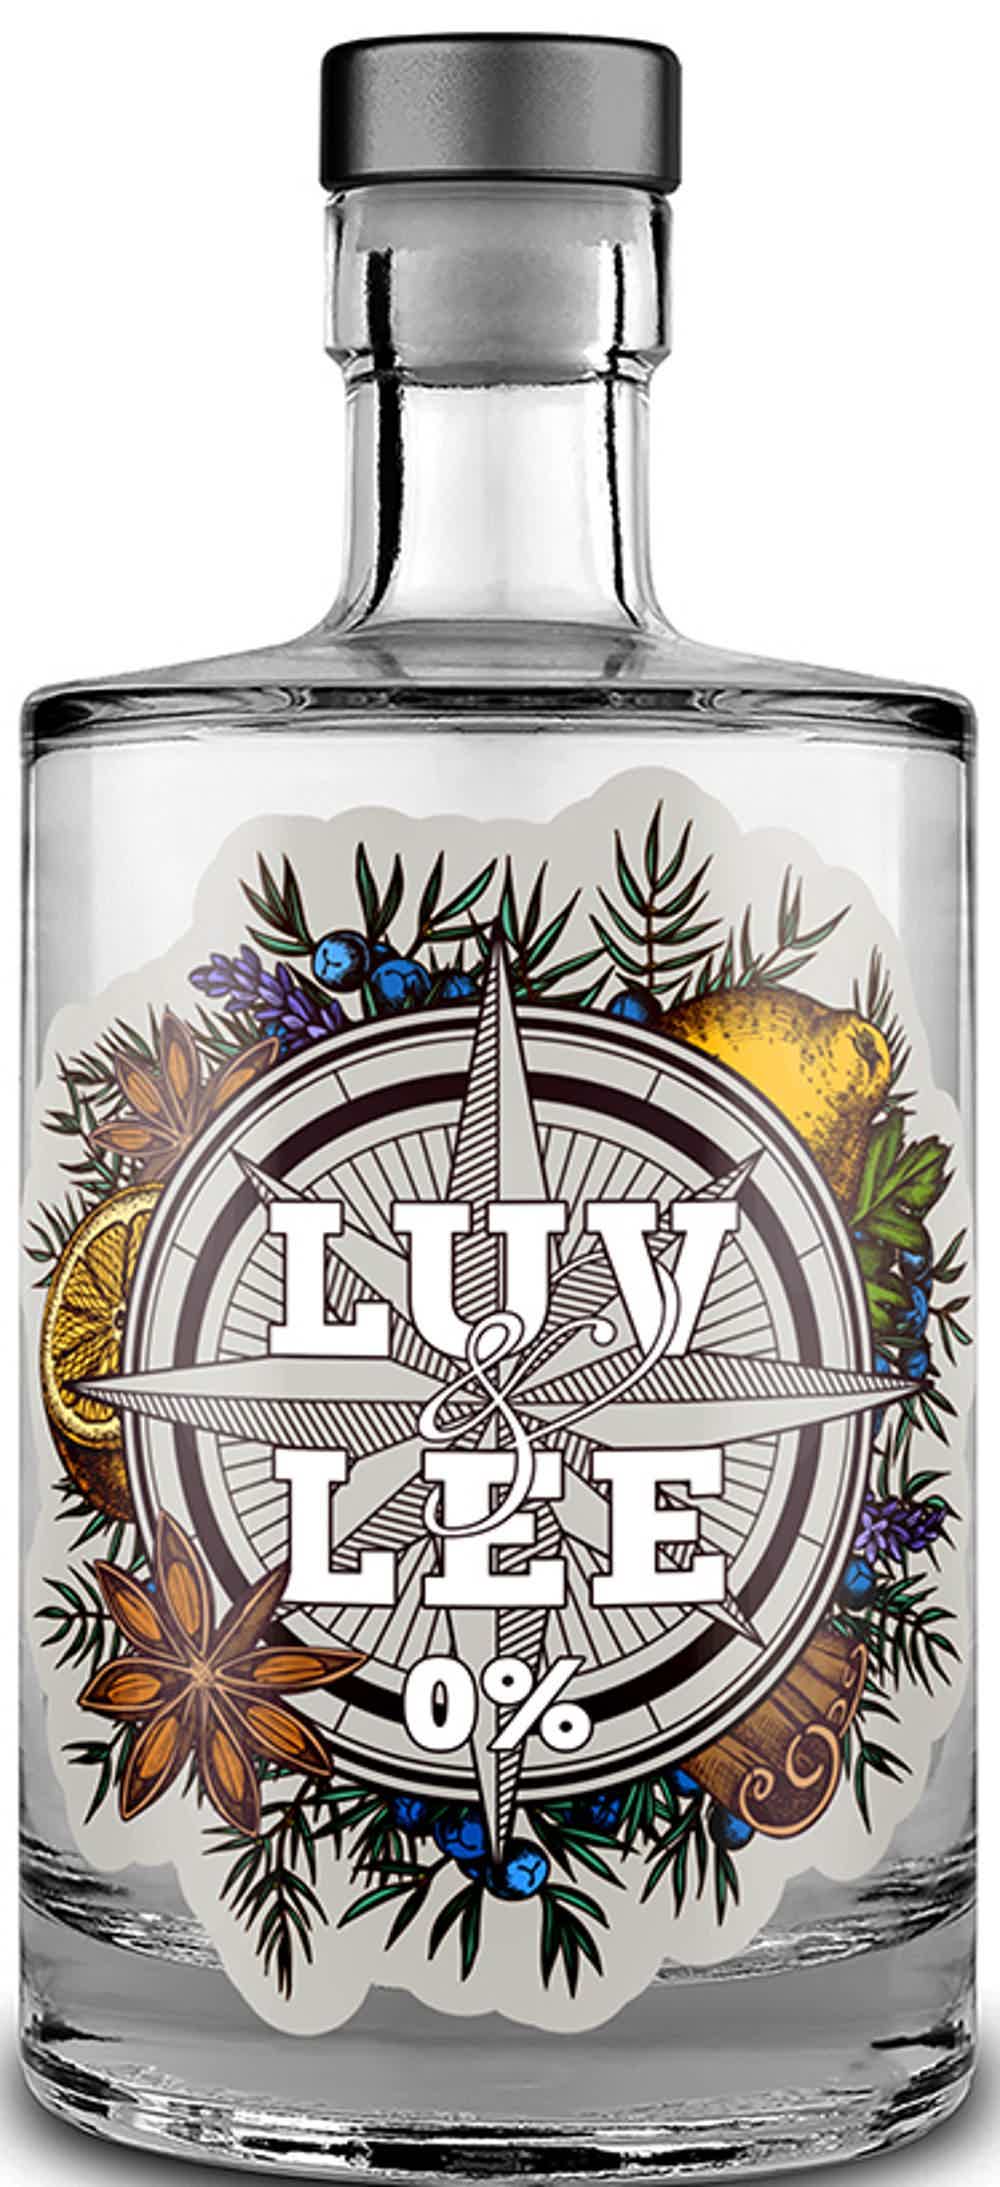 LUV & LEE 0% / NON-ALCOHOLIC GIN 0.0% 0.5L, Non alcohol